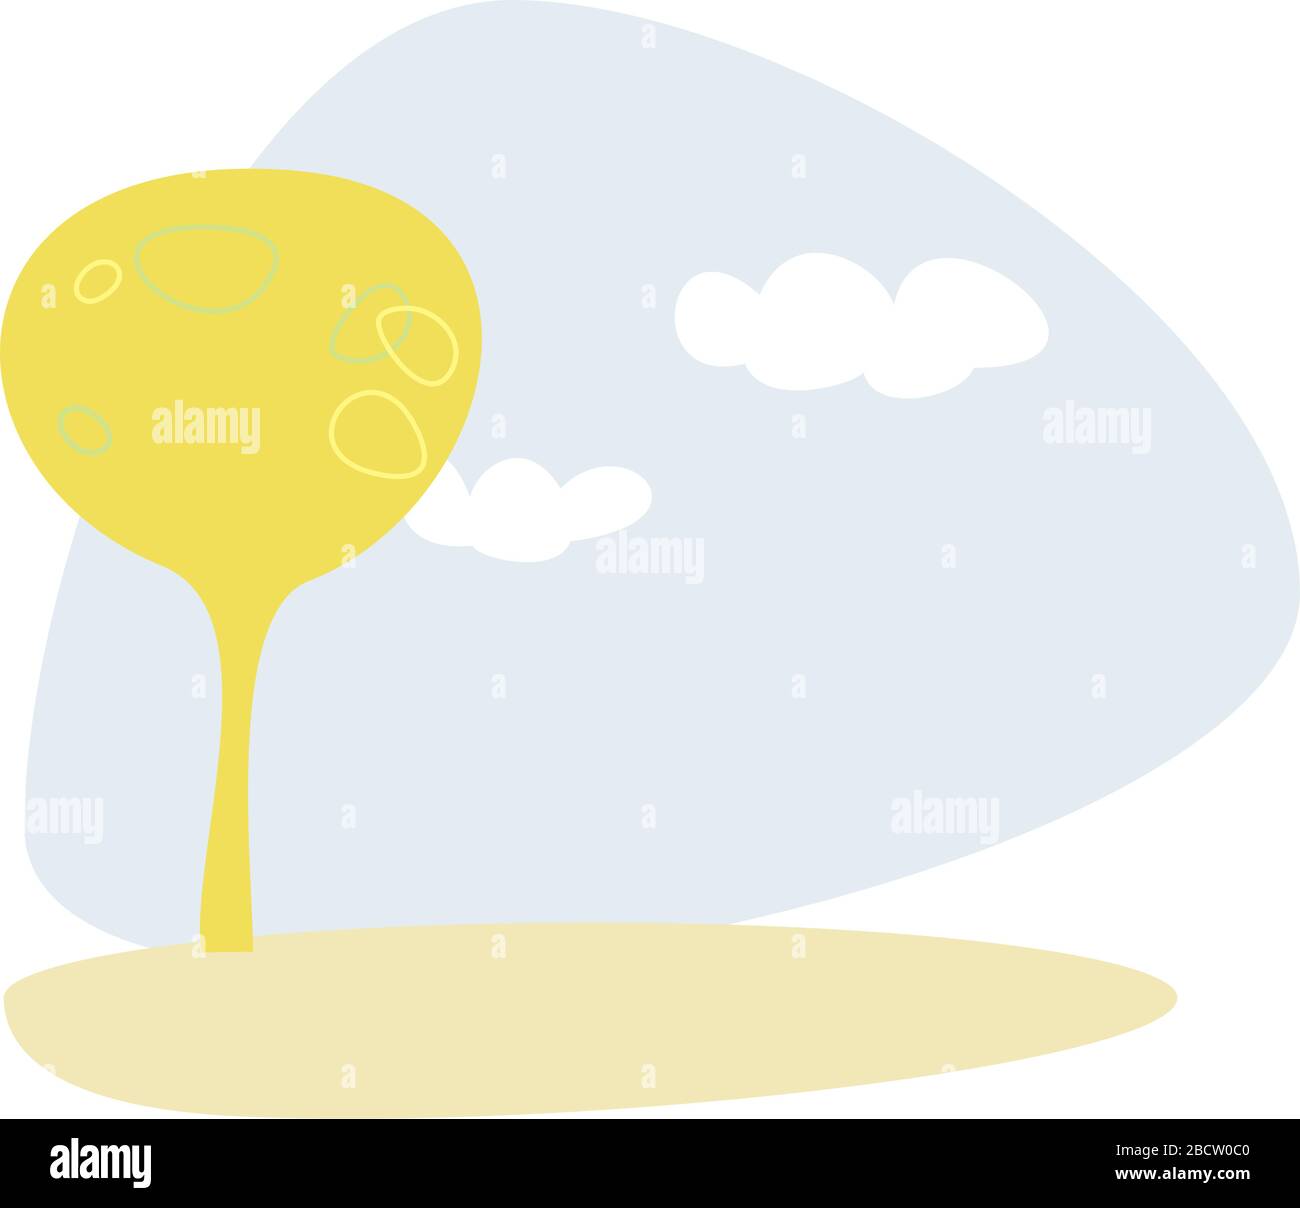 Vektor gelb grünen Baum auf dem Hügel am blauen Himmel Frühling oder Sommertag. Idyllische Ökolandschaft, Park oder Szene mit weißen Wolken - flach, modern illustrat Stock Vektor